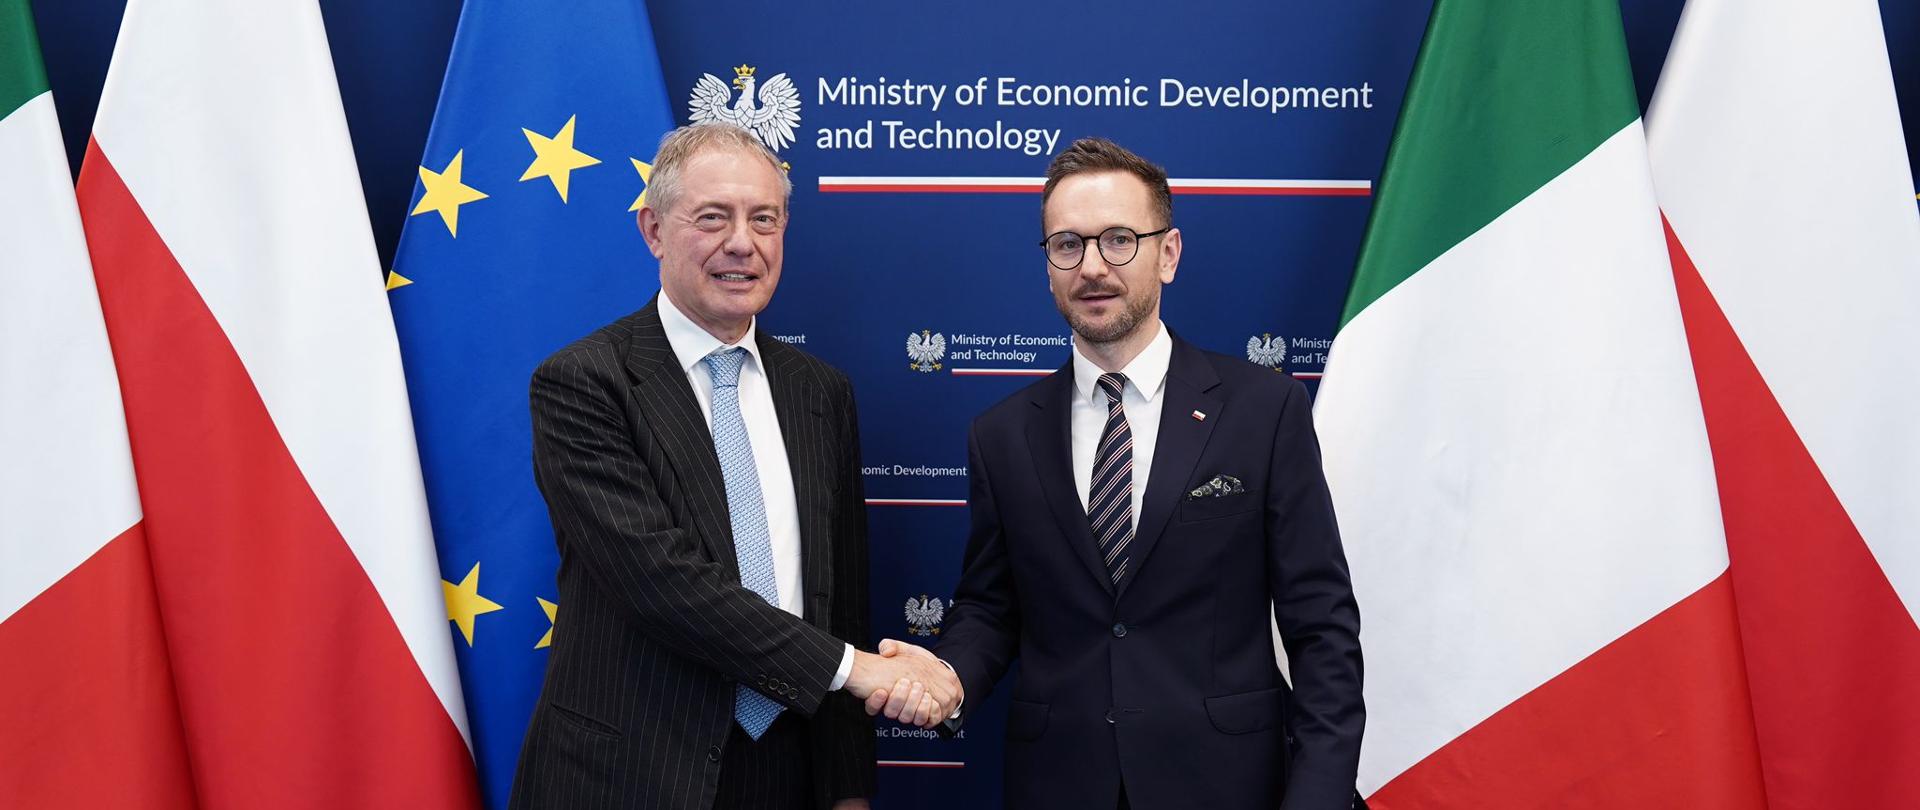 Spotkanie ministra Waldemara Budy z włoskim ministrem przedsiębiorczości i i Made in Italy Adolfo Urso.